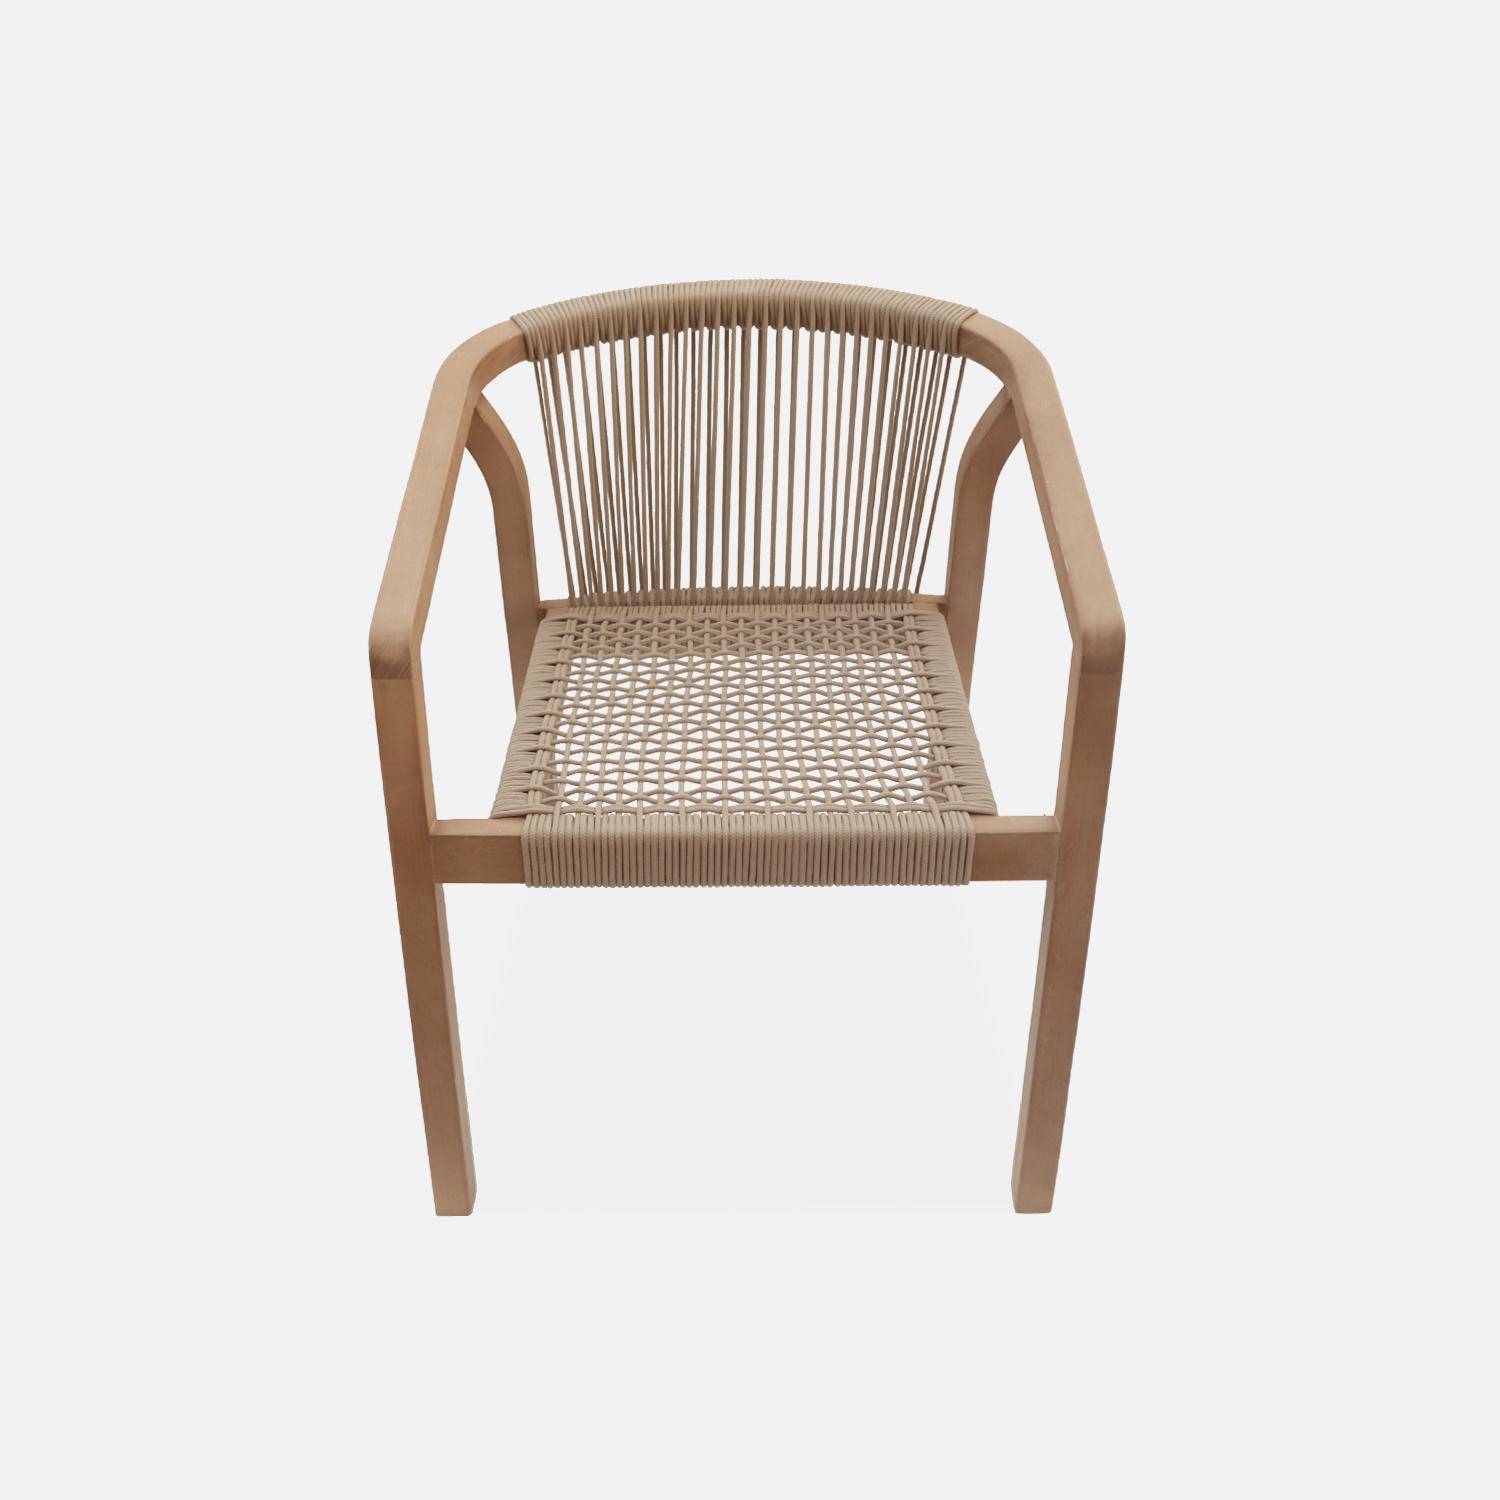 Juego de 2 sillas de jardín de madera y cuerda, apilables, para interior/exterior Photo5